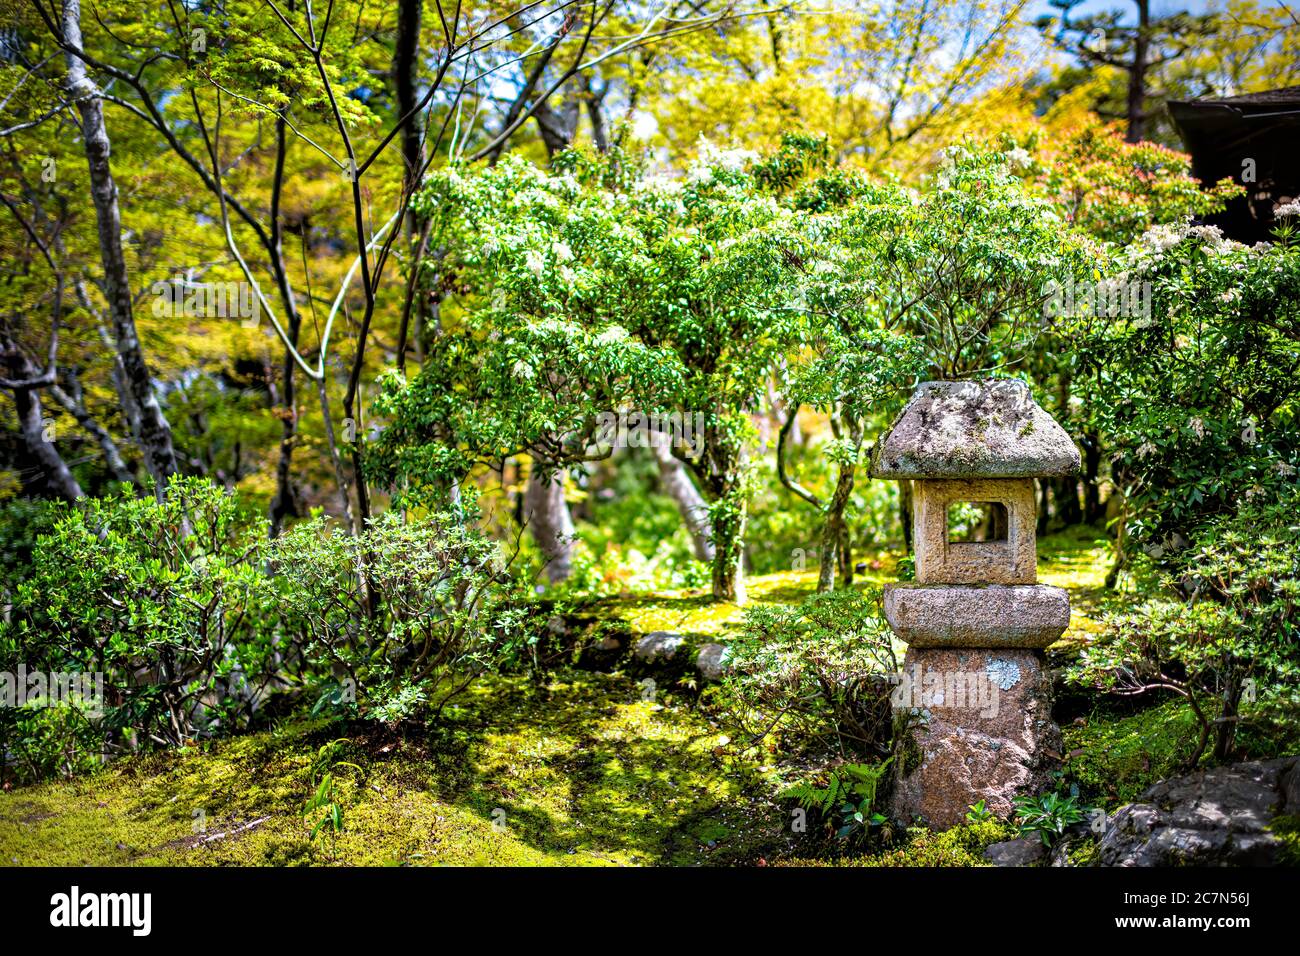 Nara, Japan Yoshikien Garten mit traditionellen japanischen grünen Moos  Landschaft und kleine Stein Laterne Lampe mit Sonnenlicht im Frühjahr  Stockfotografie - Alamy